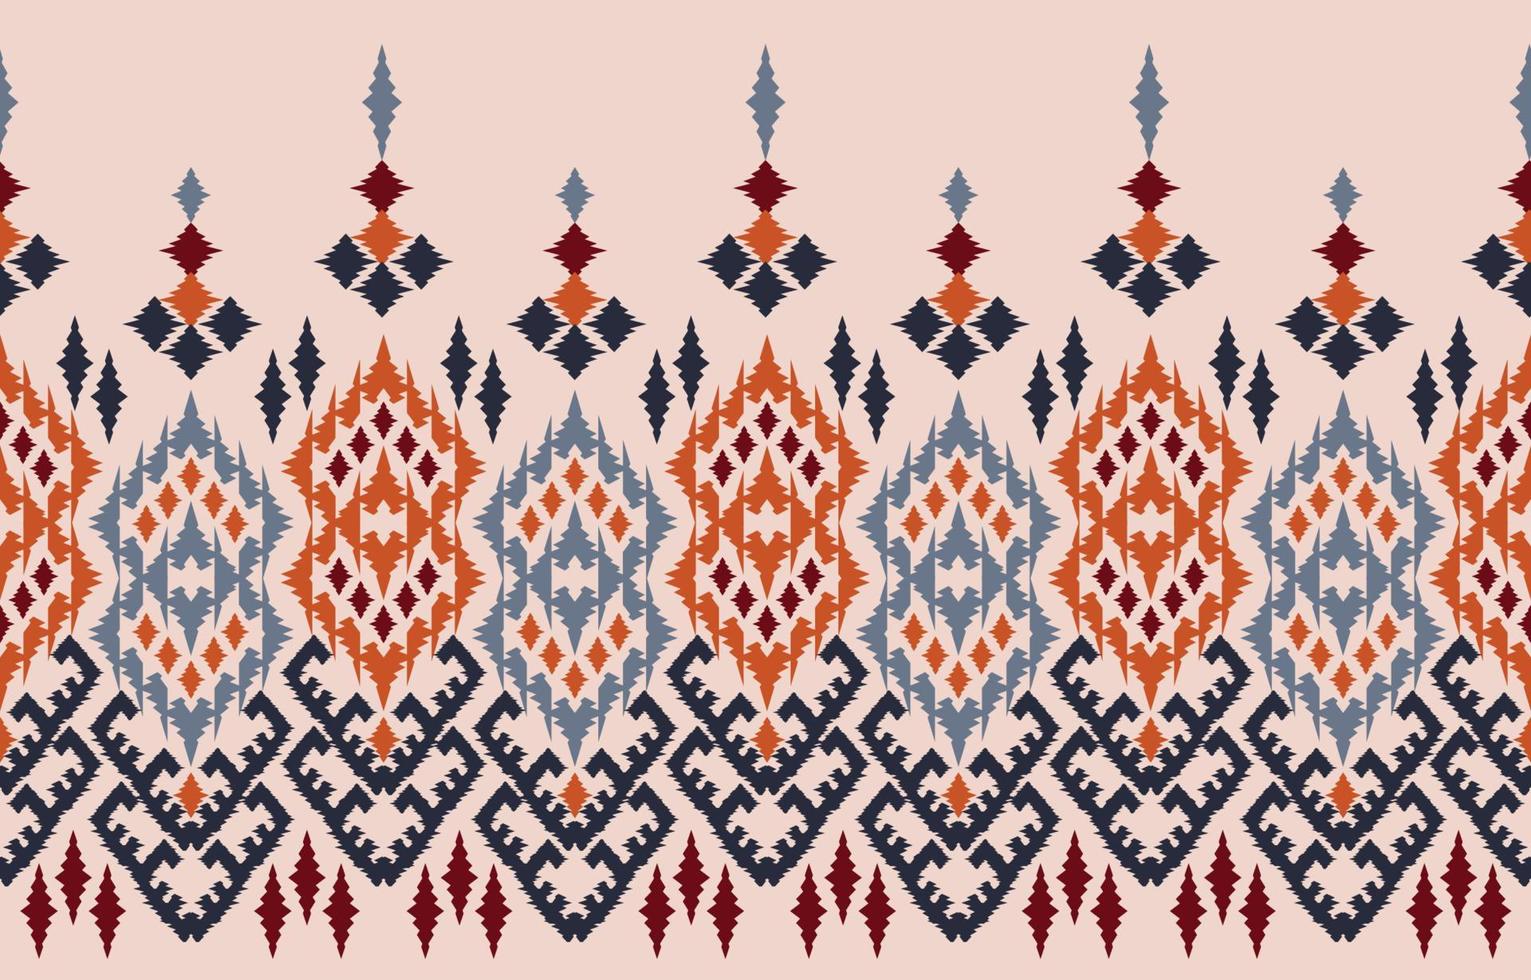 arte abstracto étnico ikat. patrón impecable en estilo tribal, bordado folclórico y mexicano. estampado de adornos de arte geométrico azteca.diseño para alfombras, papel pintado, ropa, envoltura, tela, cubierta, textil vector